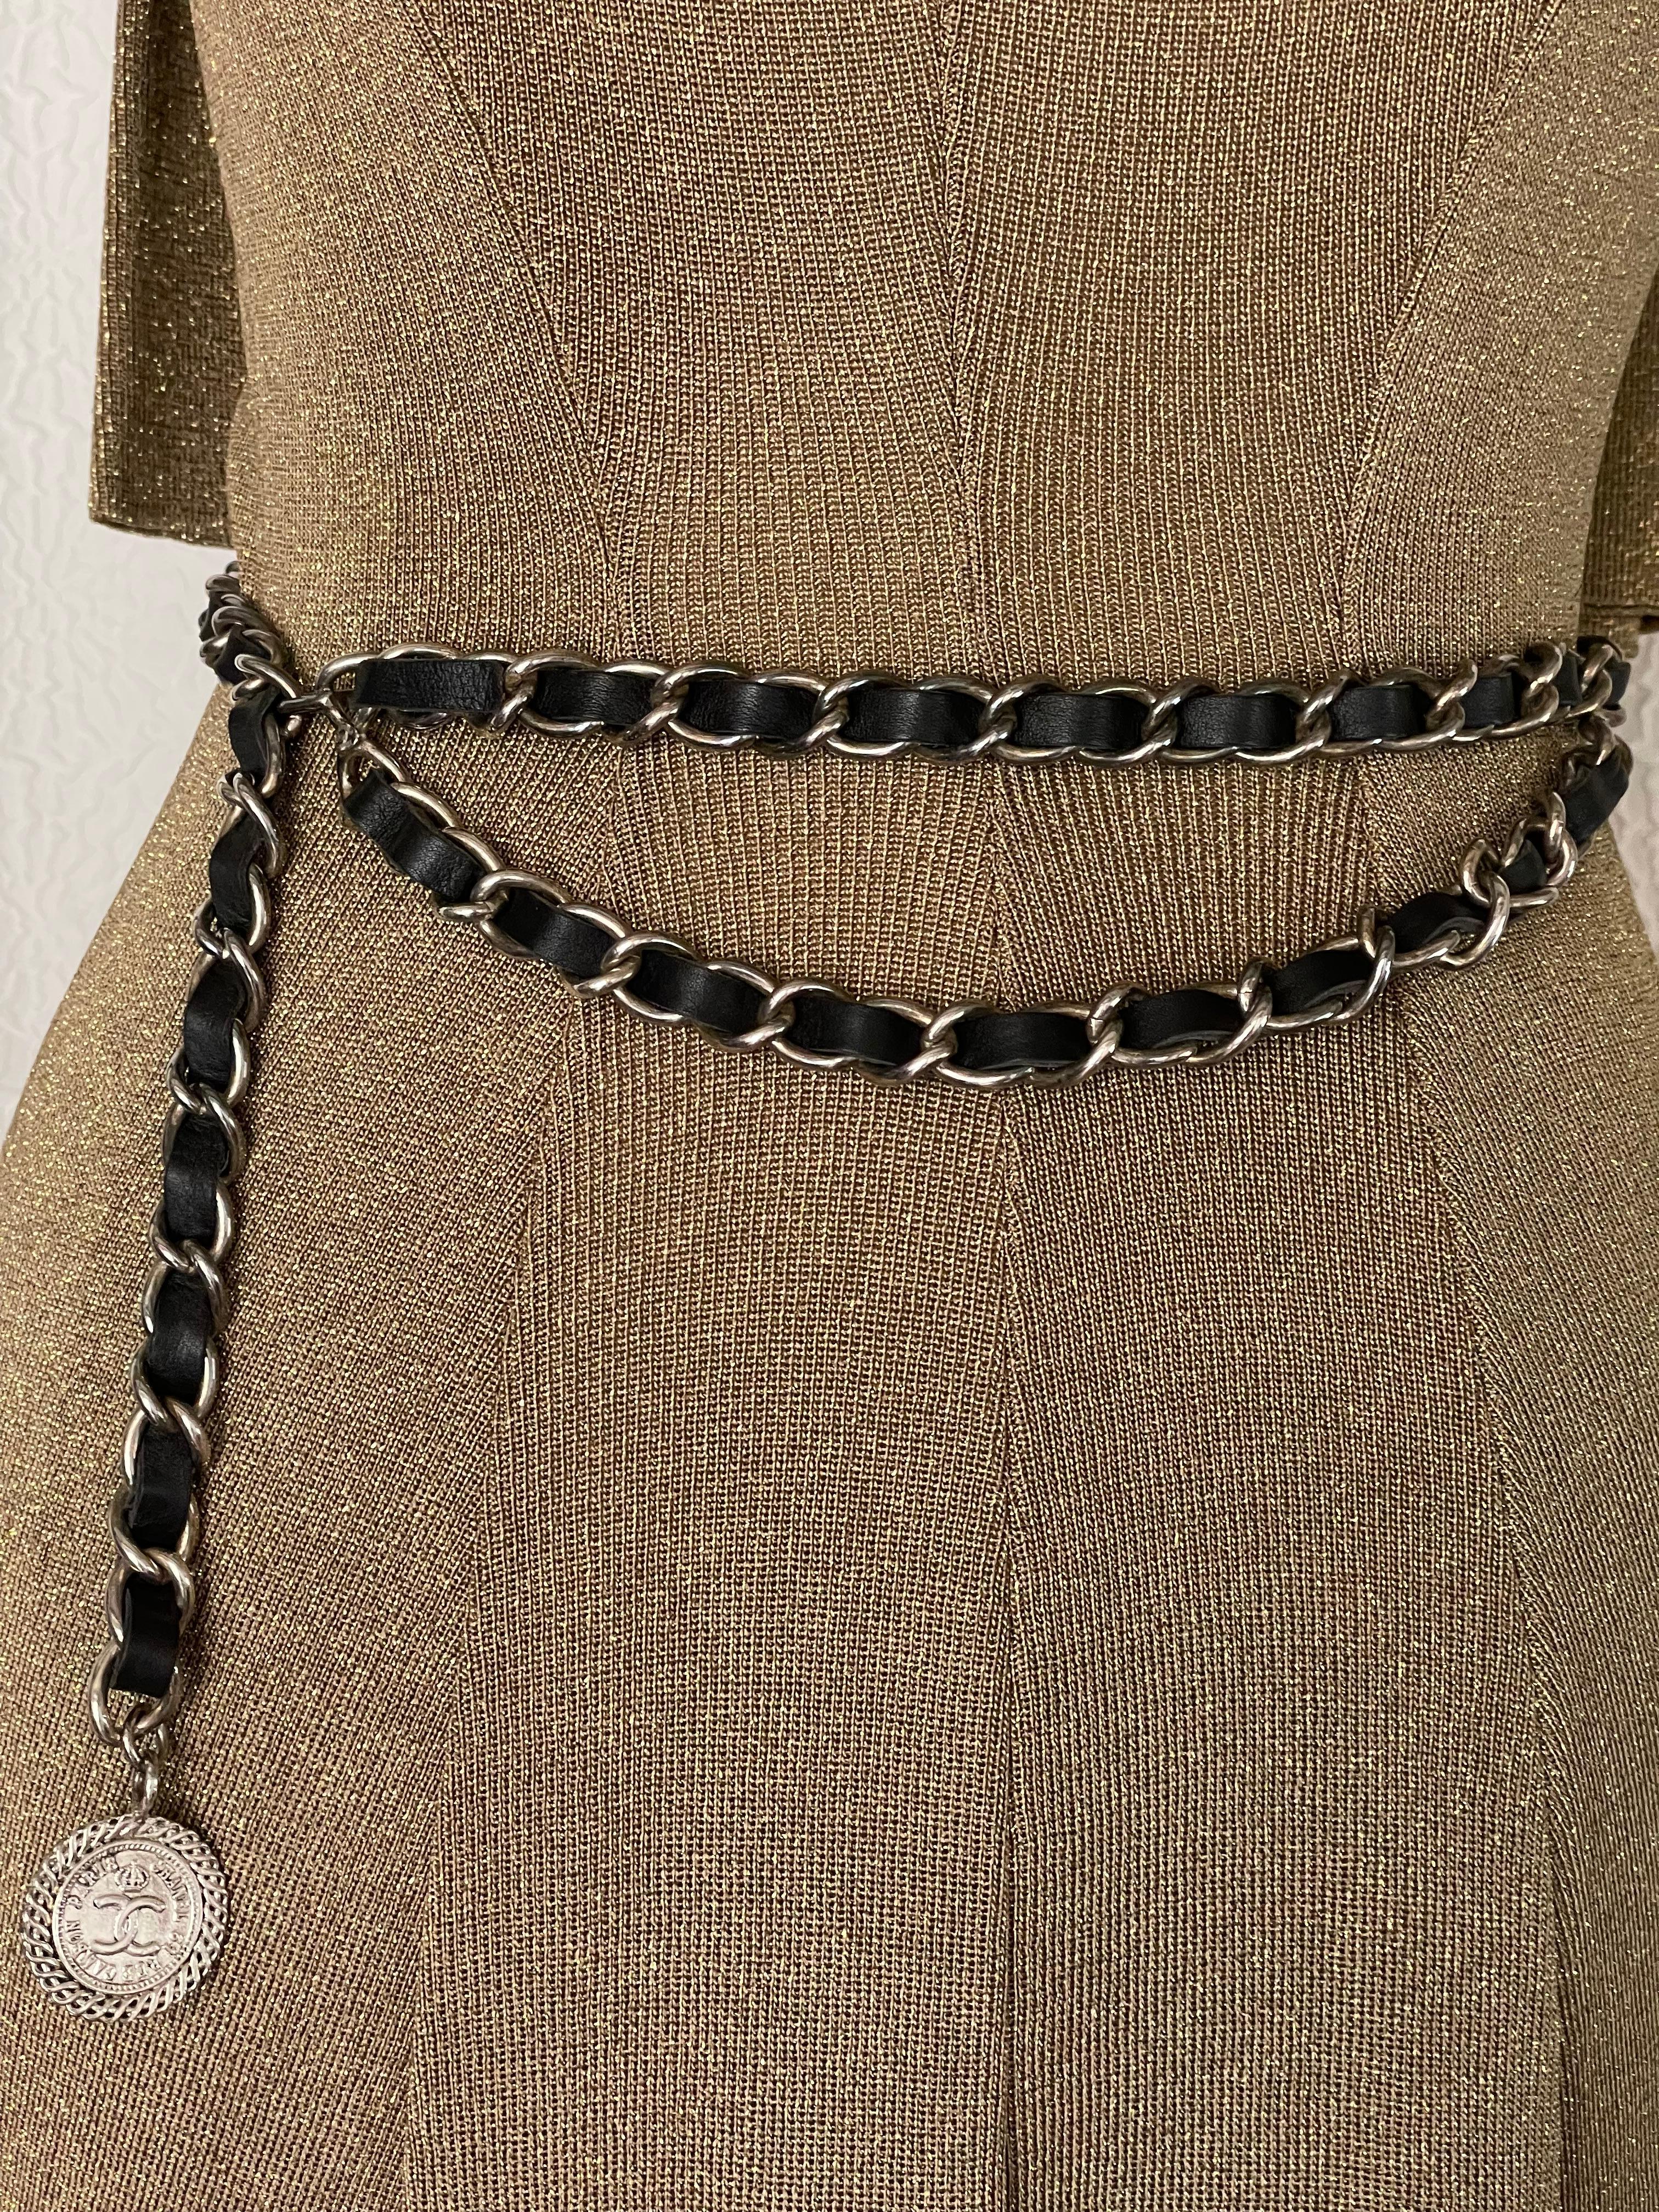 Une exceptionnelle ceinture Chanel 1995 de collection en argent, en cuir noir avec une chaîne tissée en argent, est un accessoire élégant et emblématique de la célèbre maison de couture française Chanel. Chanel, fondée par Coco Chanel, est connue